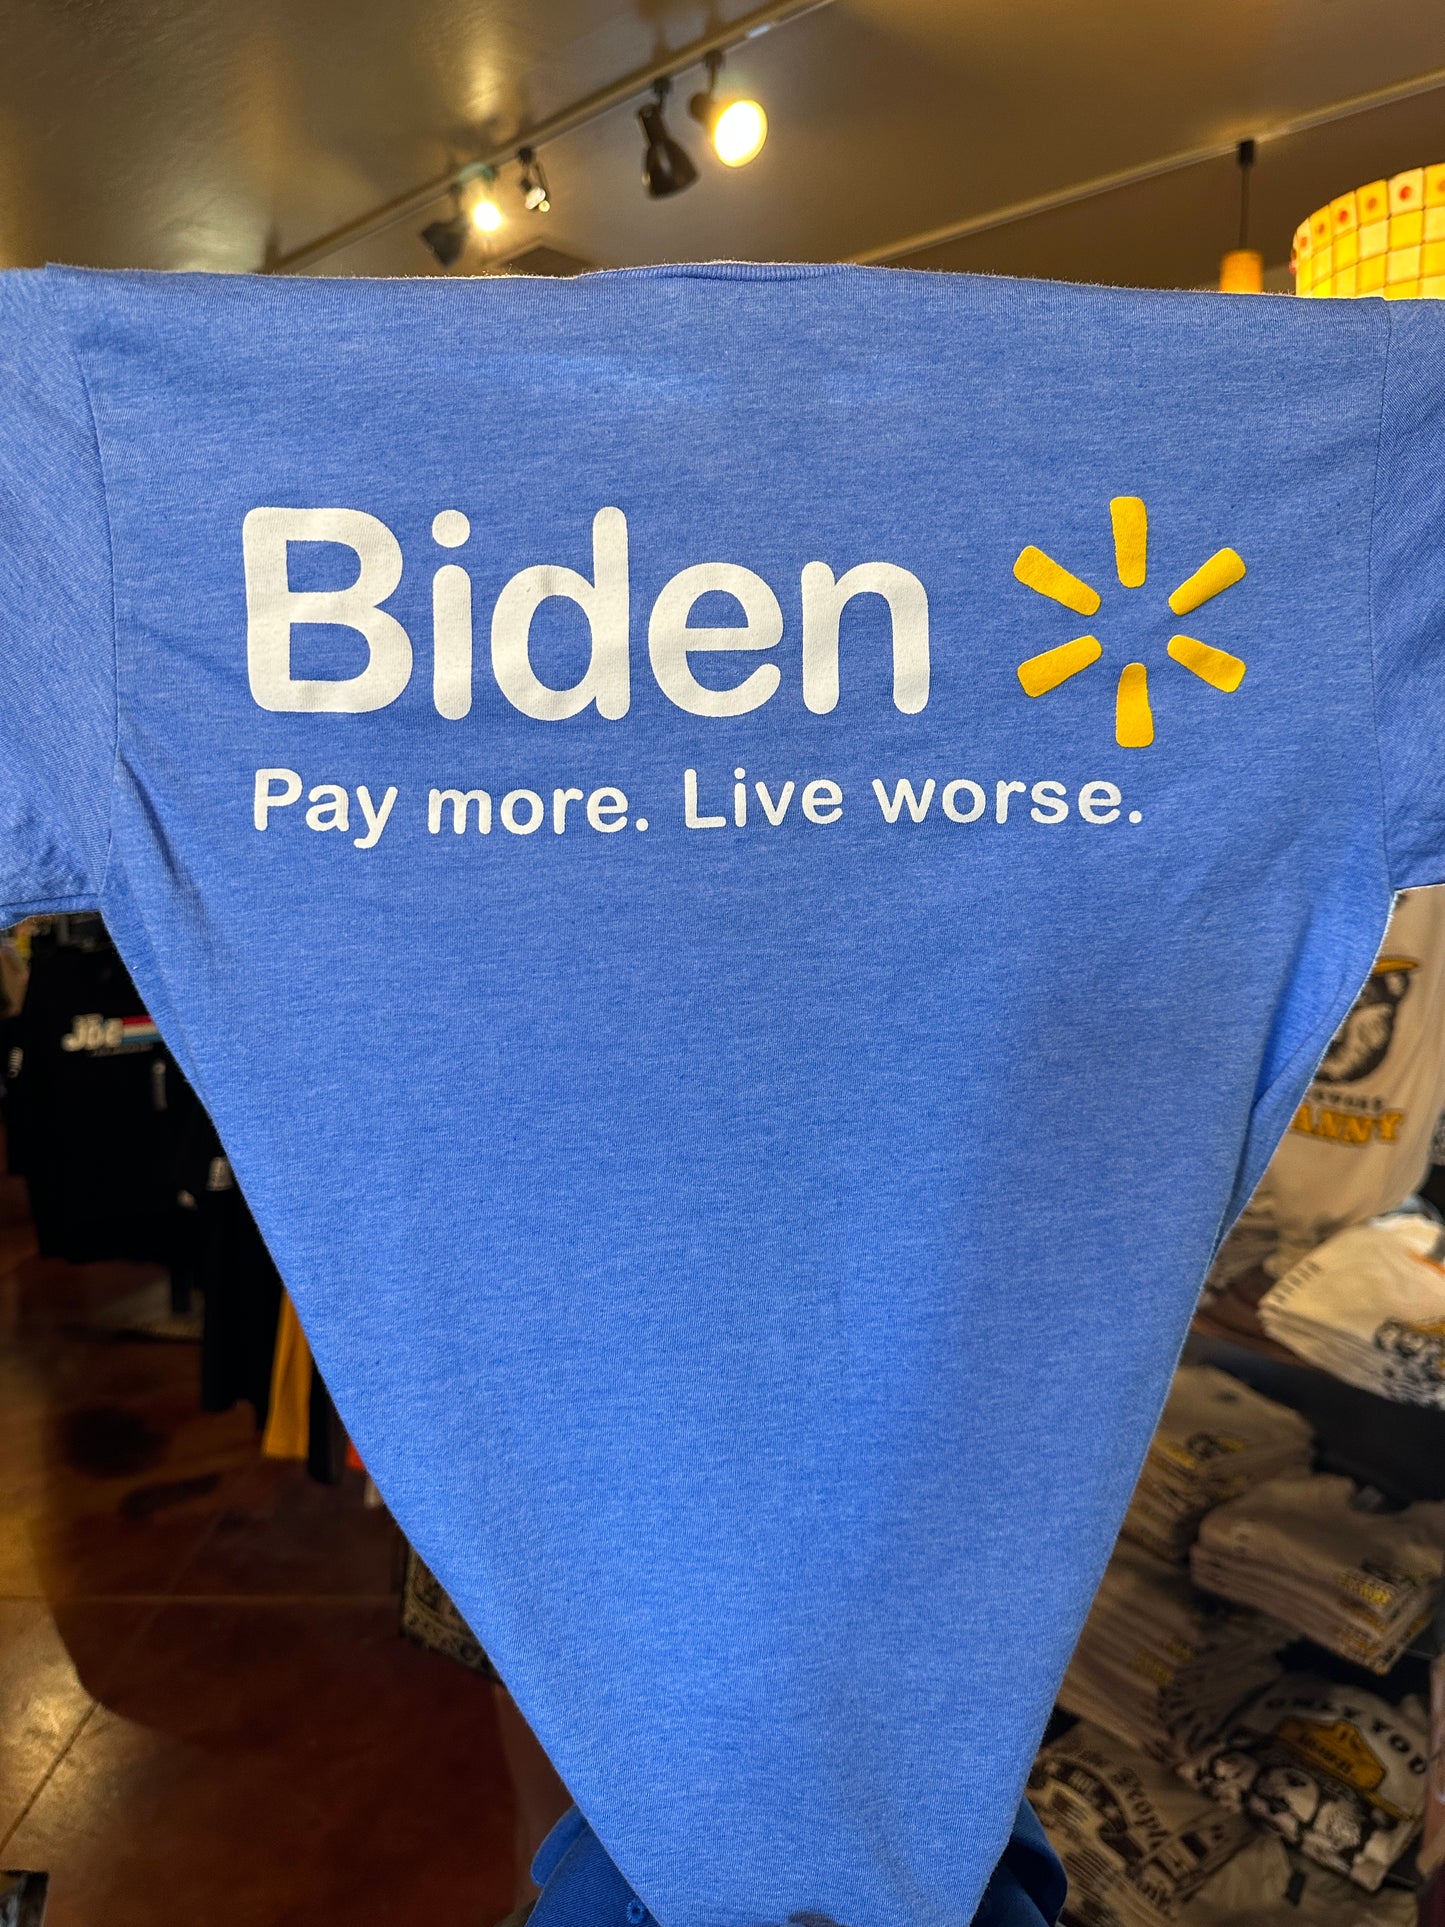 Biden parody shirt closeup